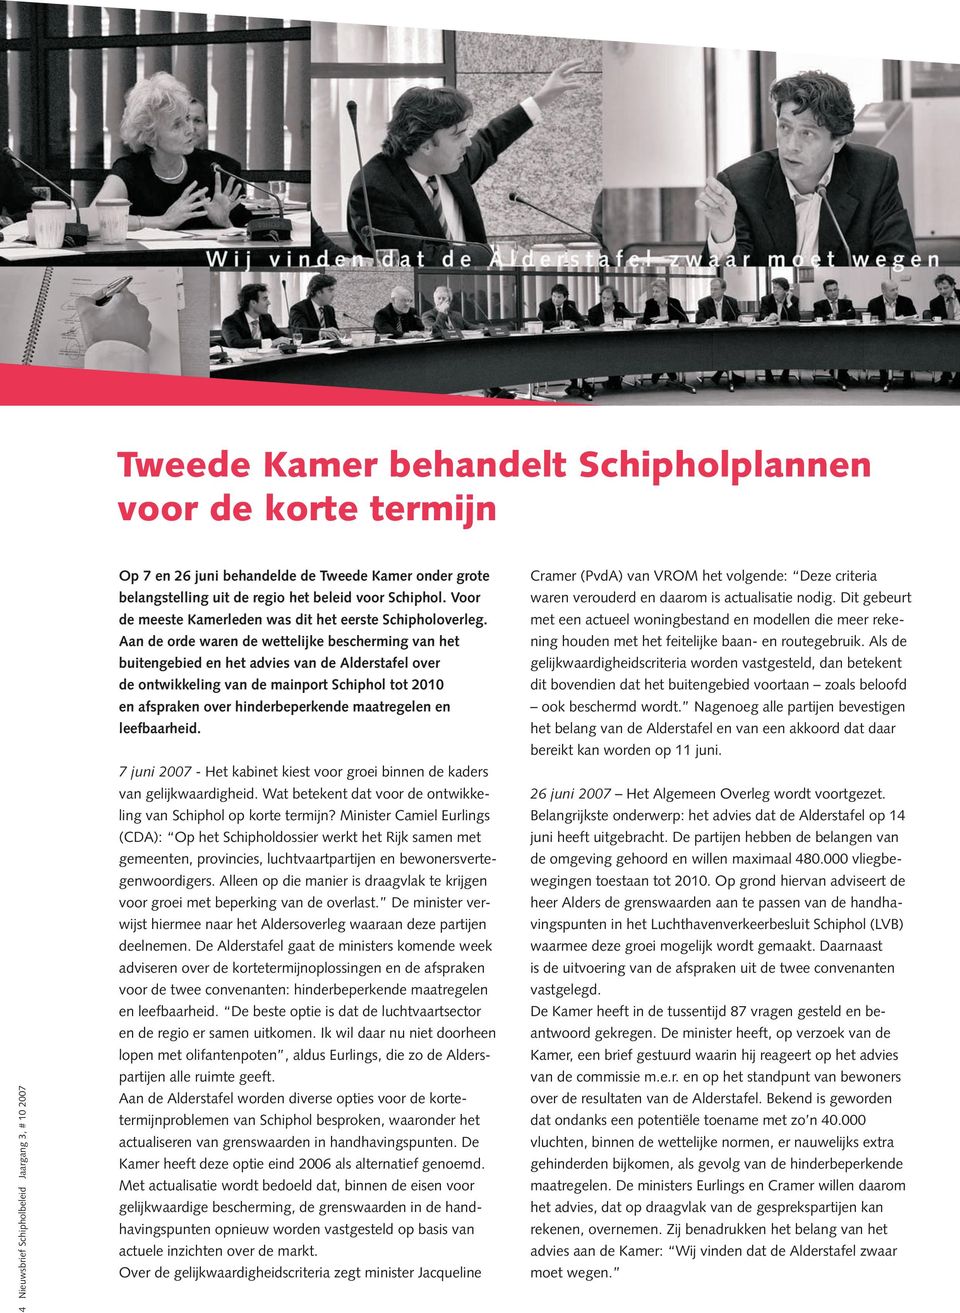 Aan de orde waren de wettelijke bescherming van het buitengebied en het advies van de Alderstafel over de ontwikkeling van de mainport Schiphol tot 2010 en afspraken over hinderbeperkende maatregelen